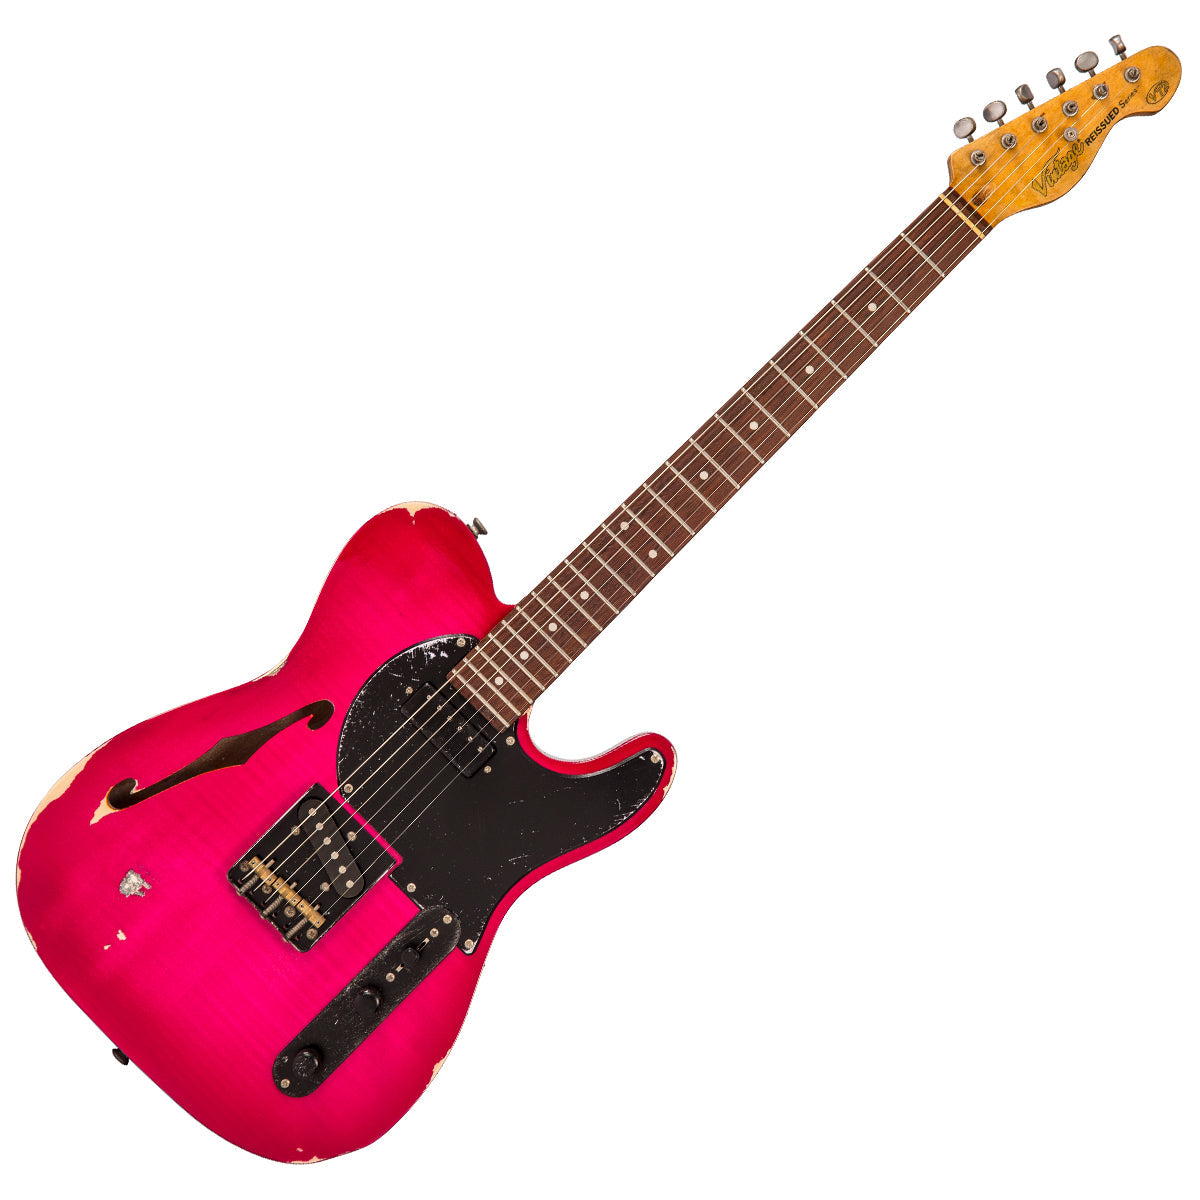 SOLD - Vintage V72 ProShop Unique ~ Flamed Pink Relic, Electrics for sale at Richards Guitars.